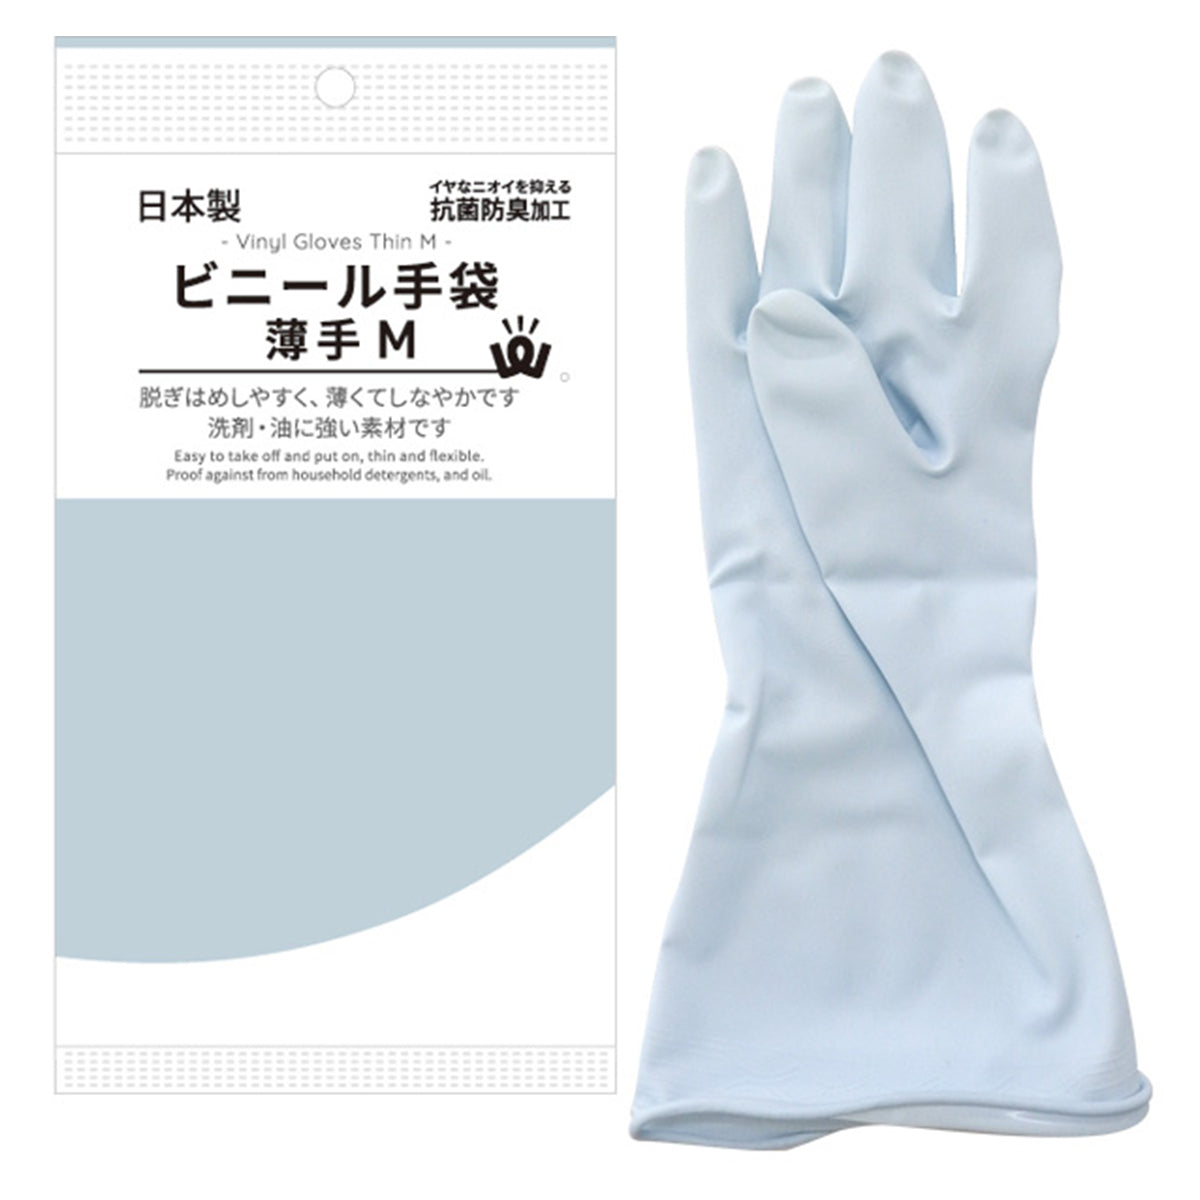 ビニール手袋 ビニ手 PB.ビニール手袋 薄手 M ブルー 全長約30cm 0474/016171